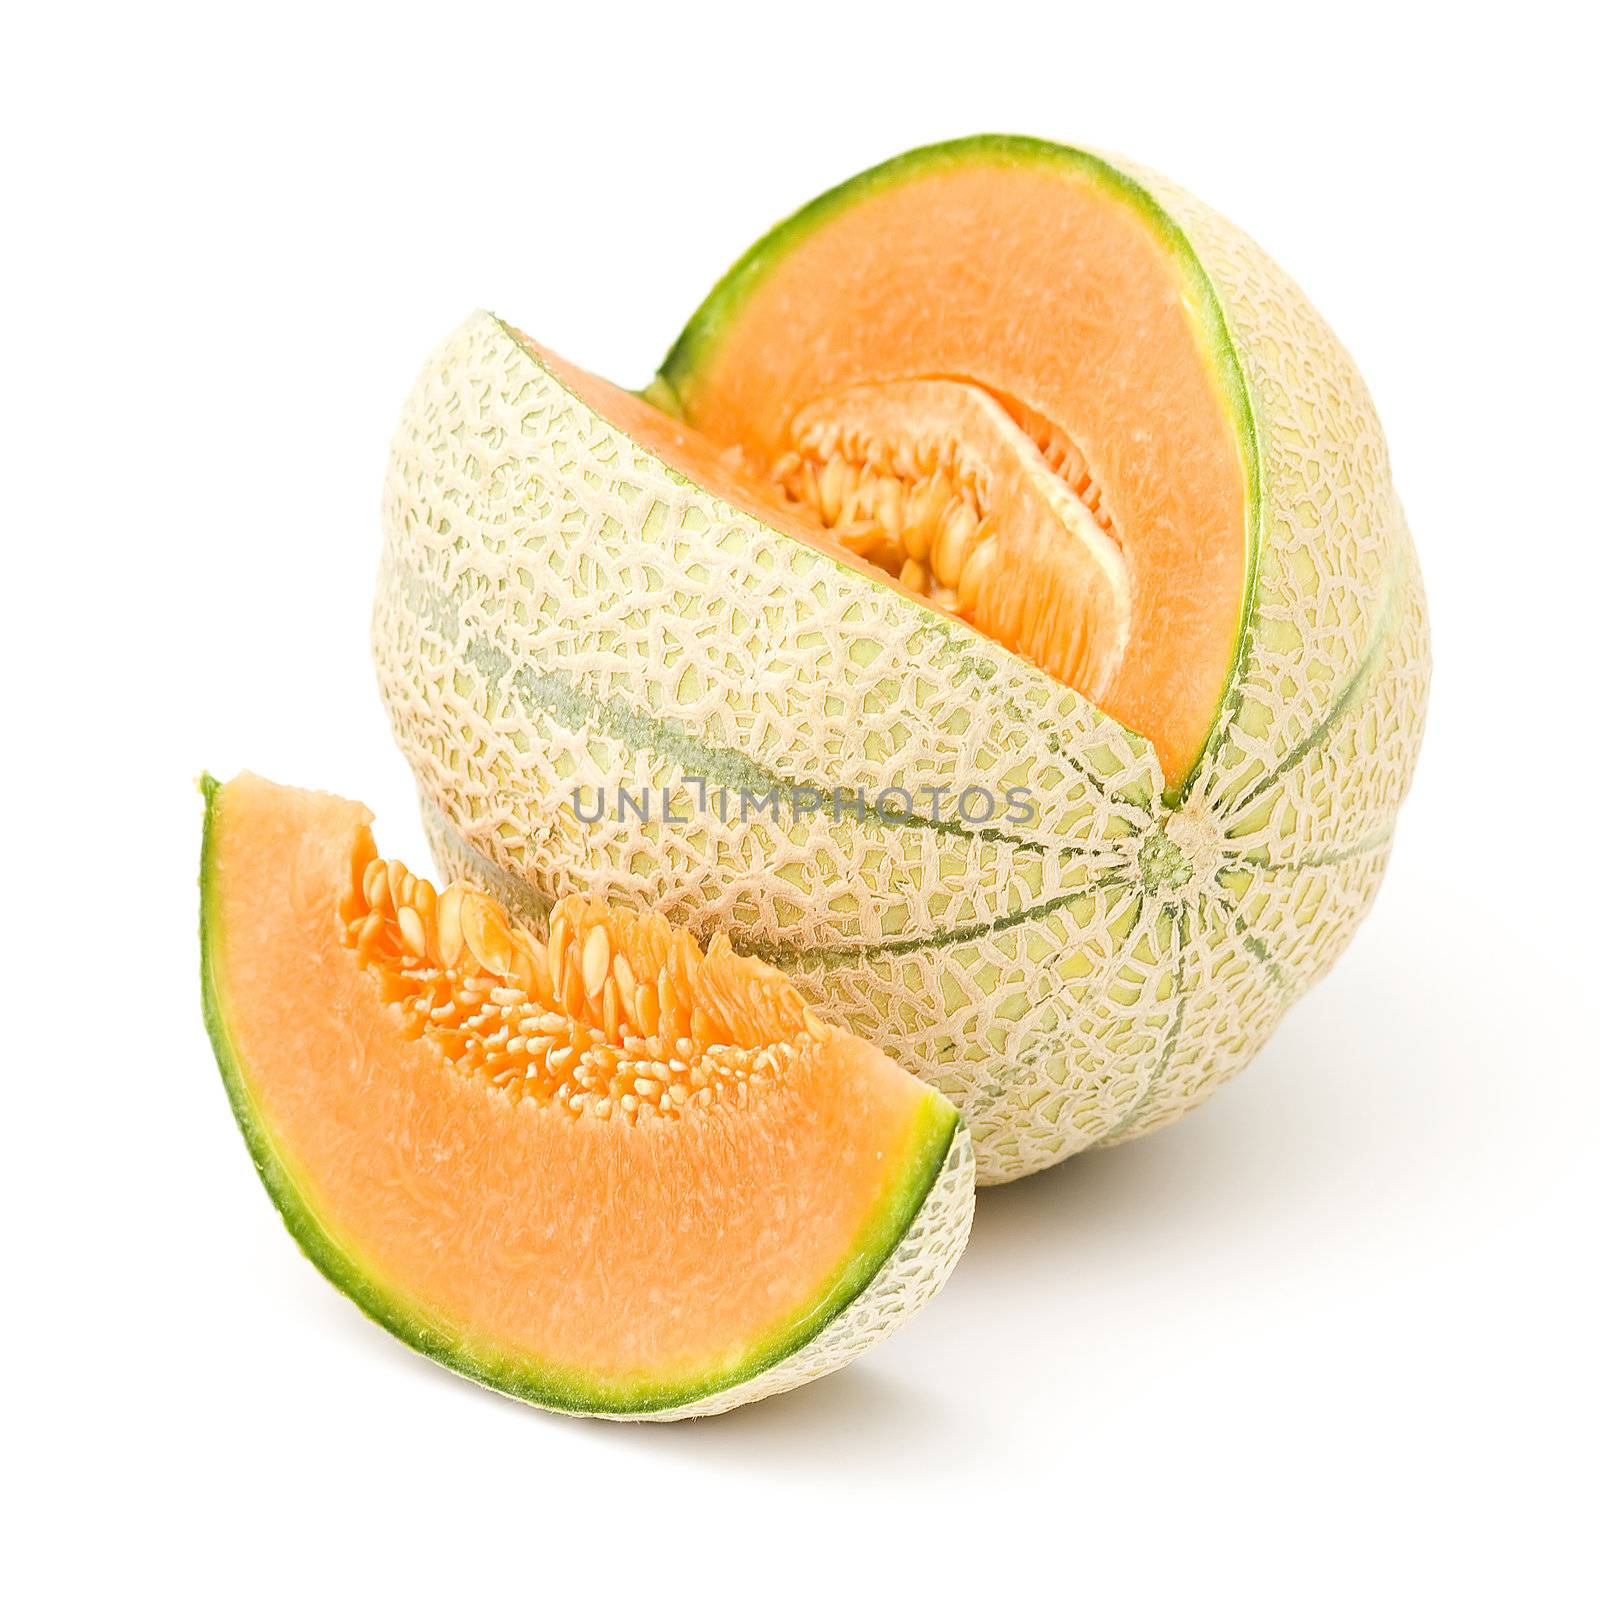 orange cantaloupe melon isolated on white background by miradrozdowski